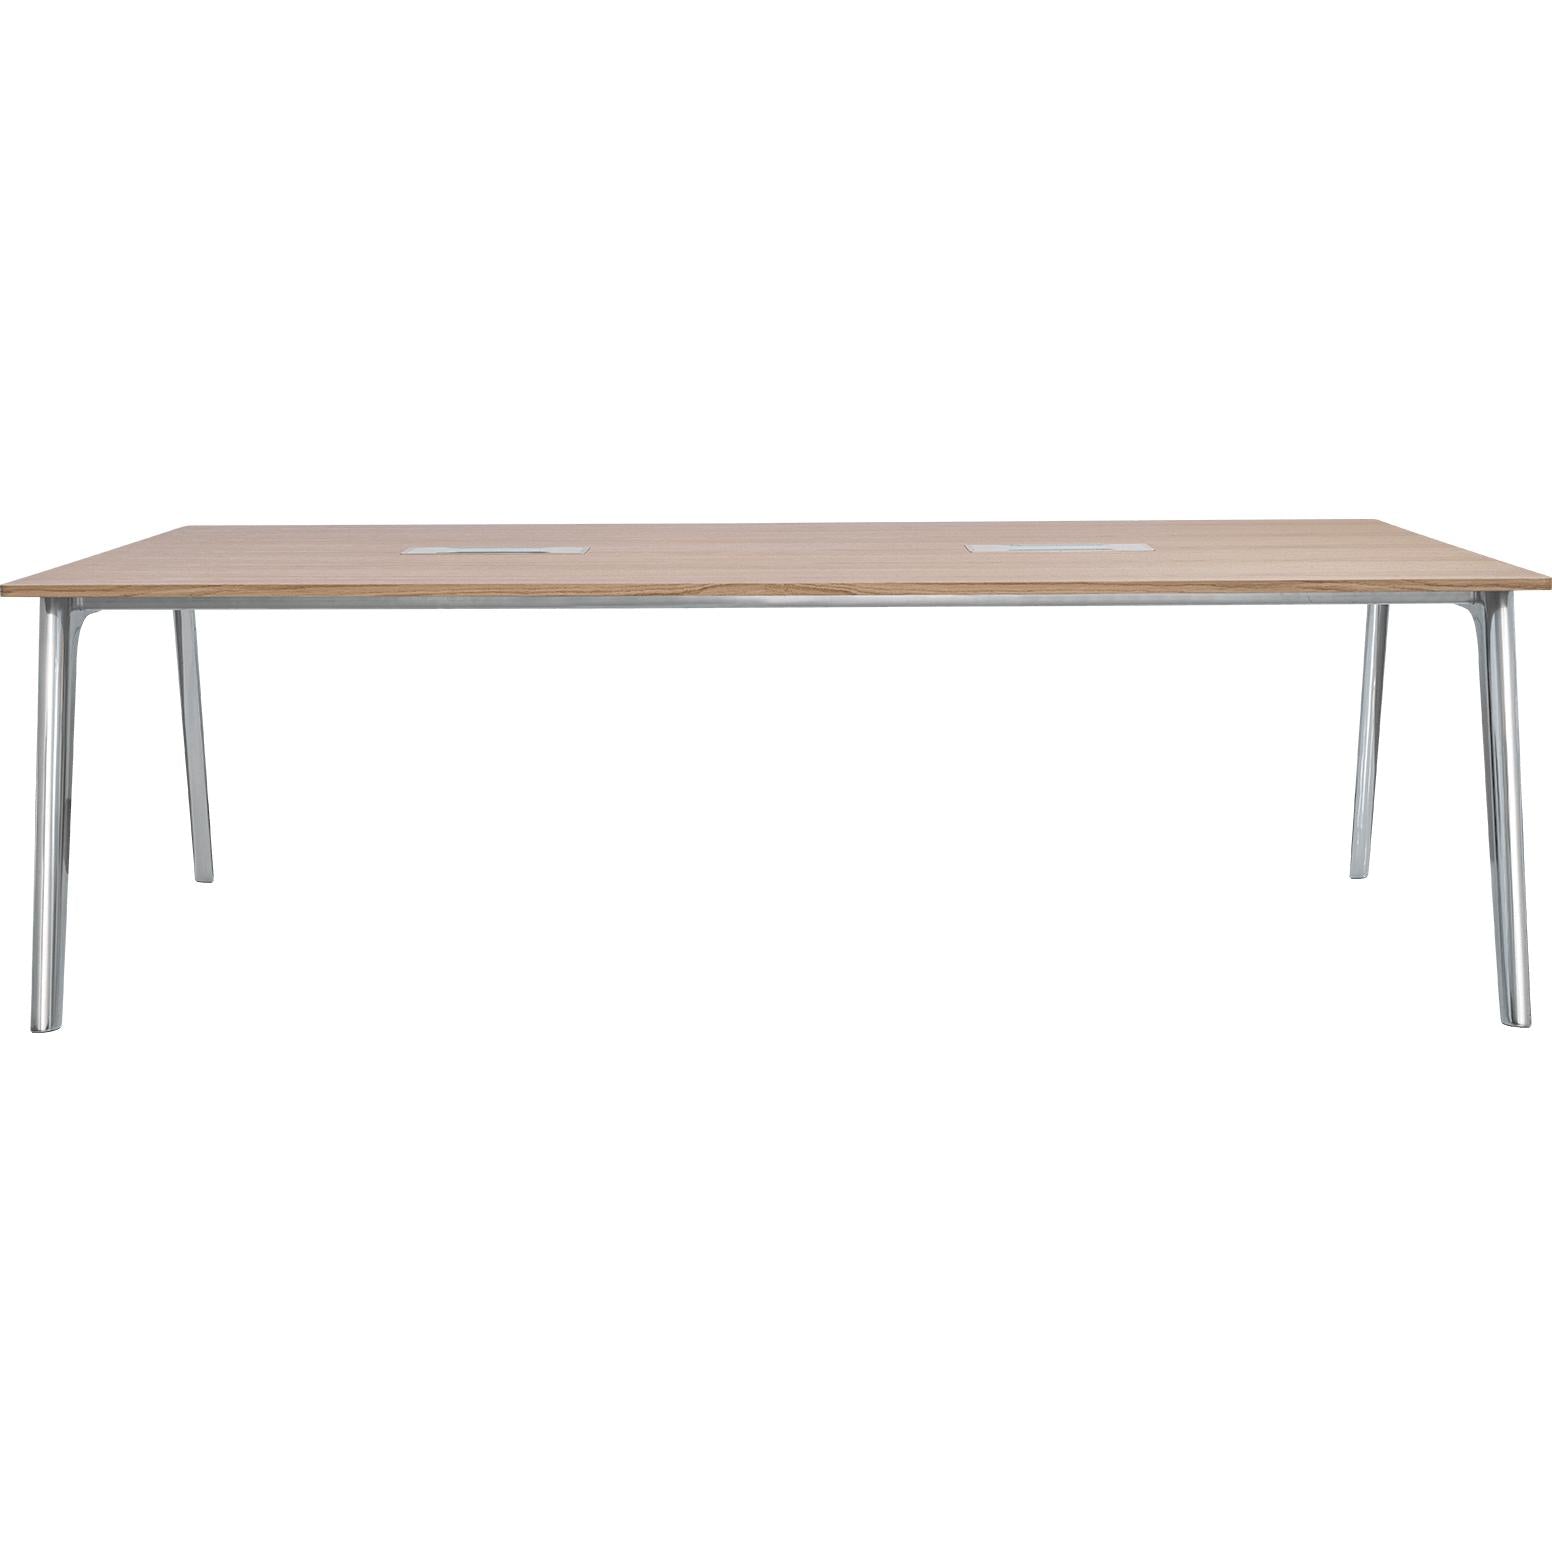 Fritz Hansen Pluralis Table de aluminio pulido, chapa de nogal